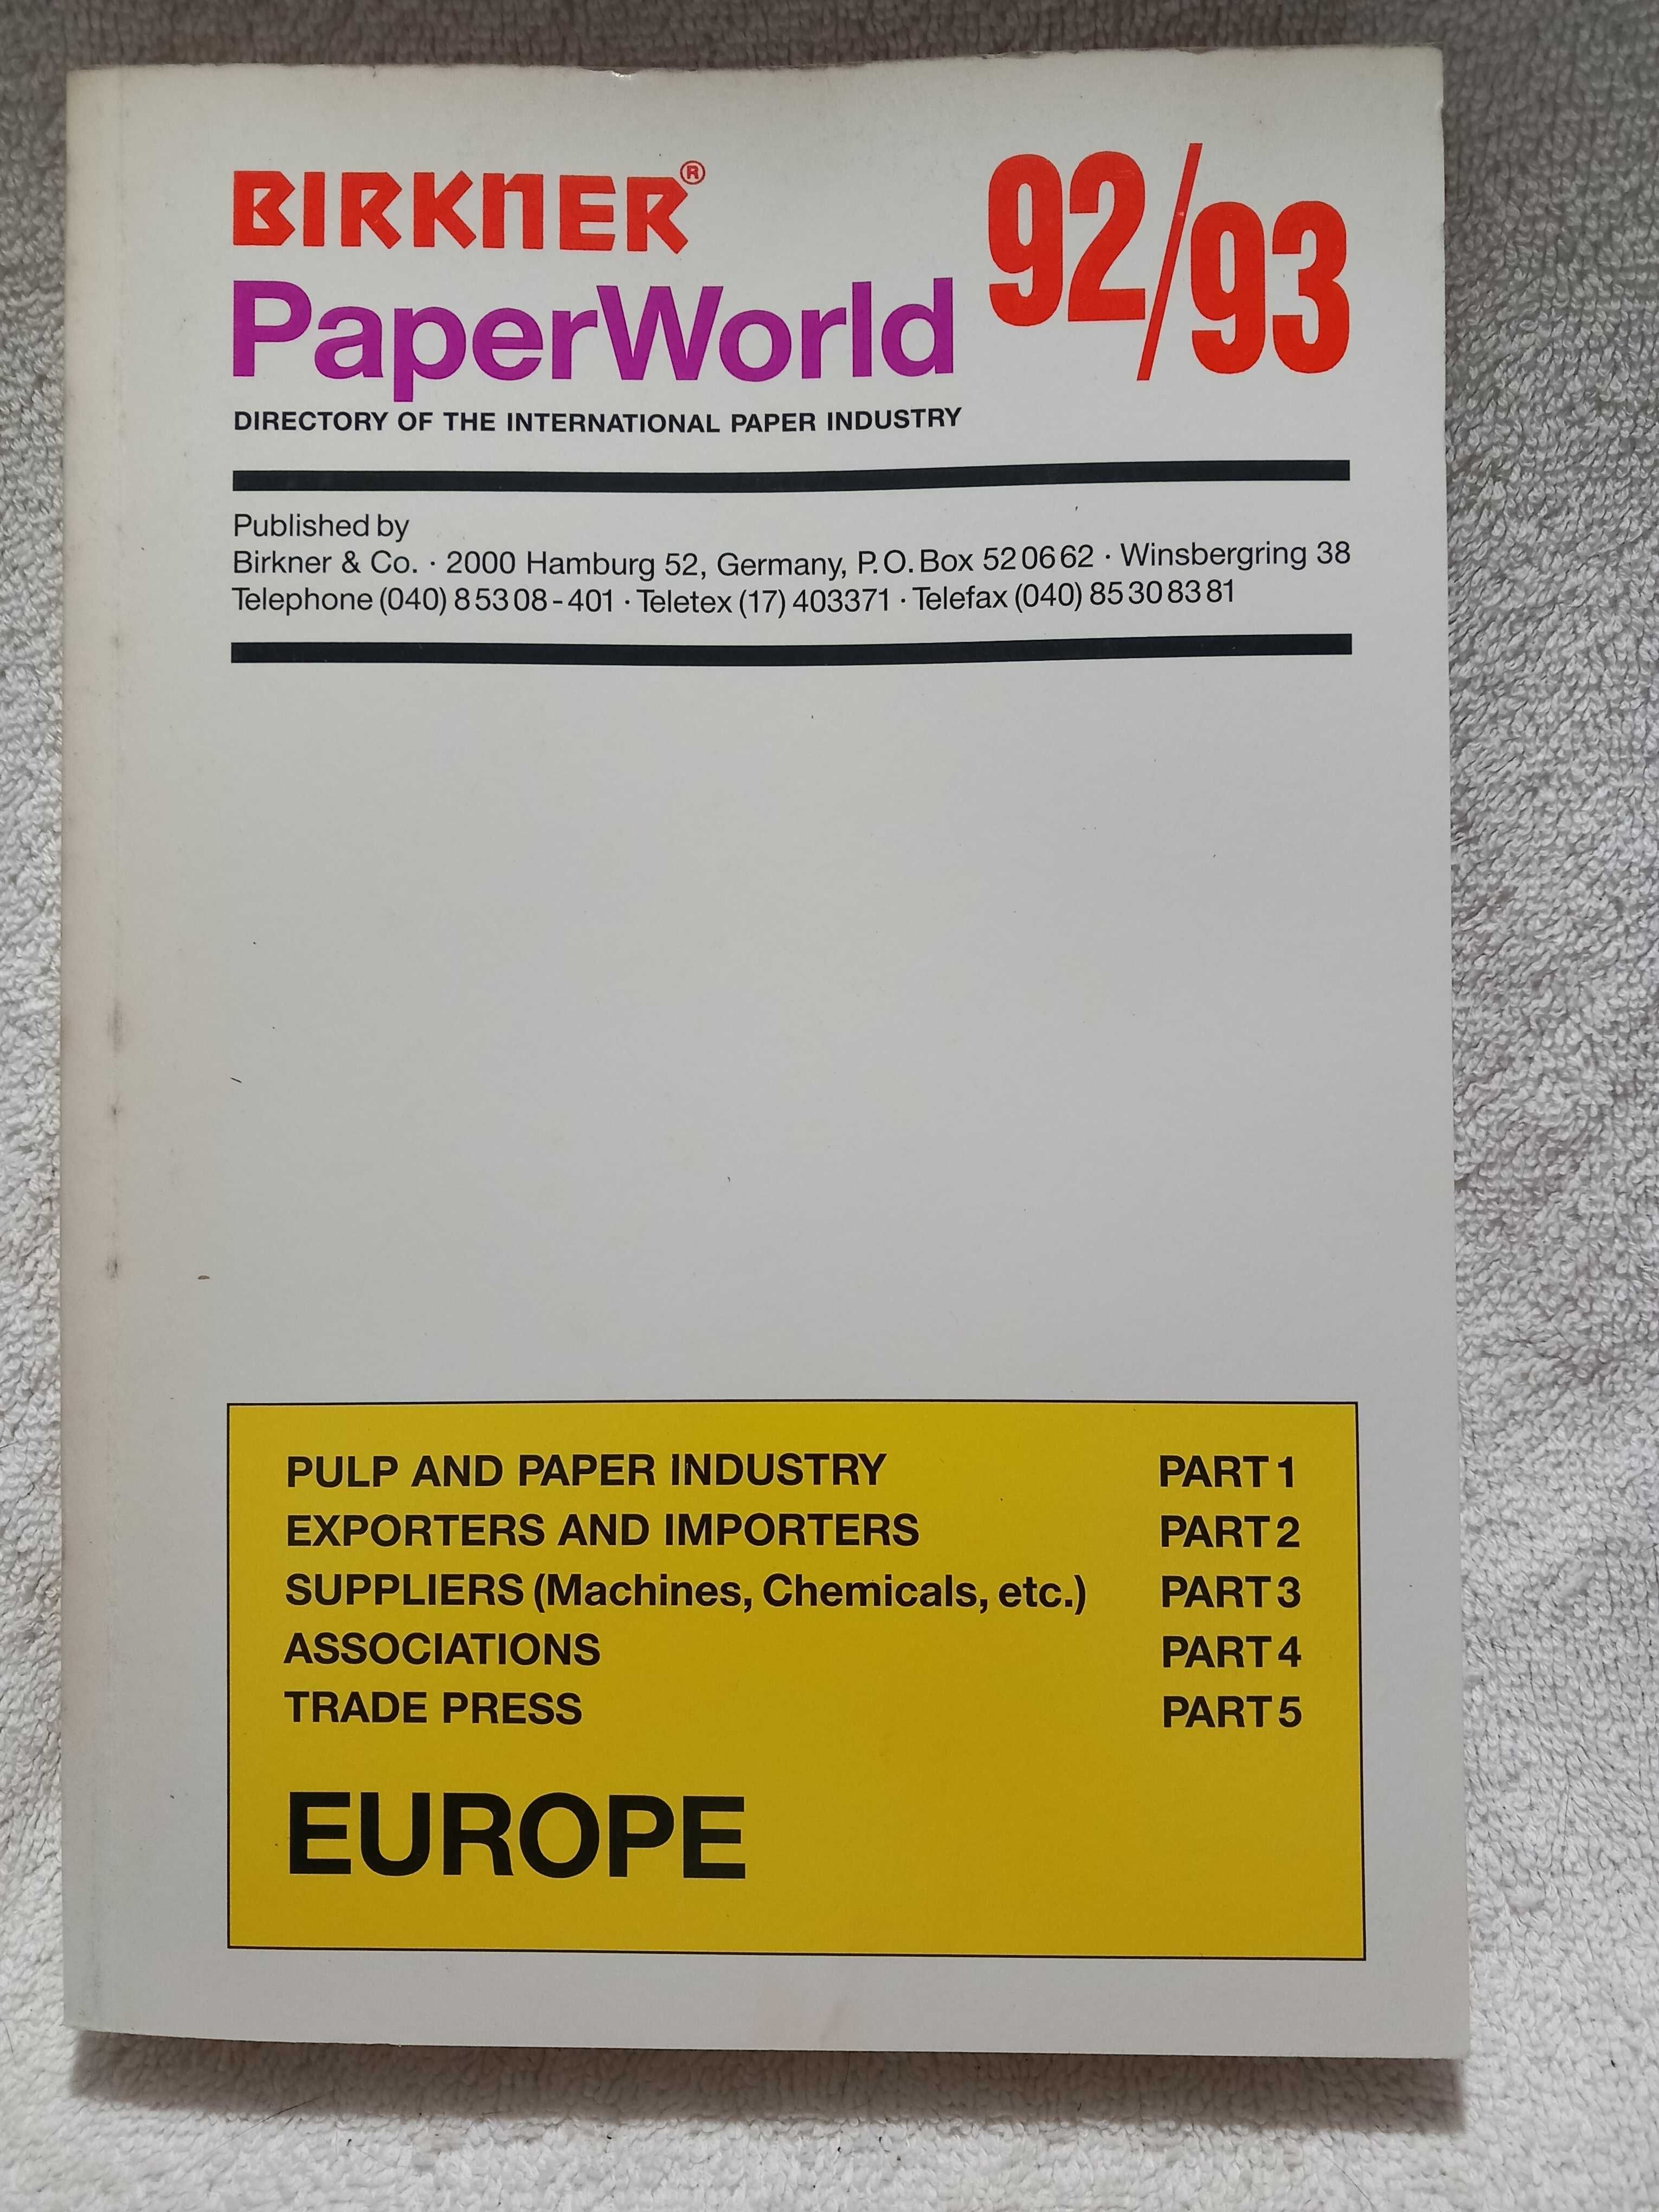 Livros, BIRKNER, PaperWorld 92, 93 Zanders (Paper, papier, perfection)